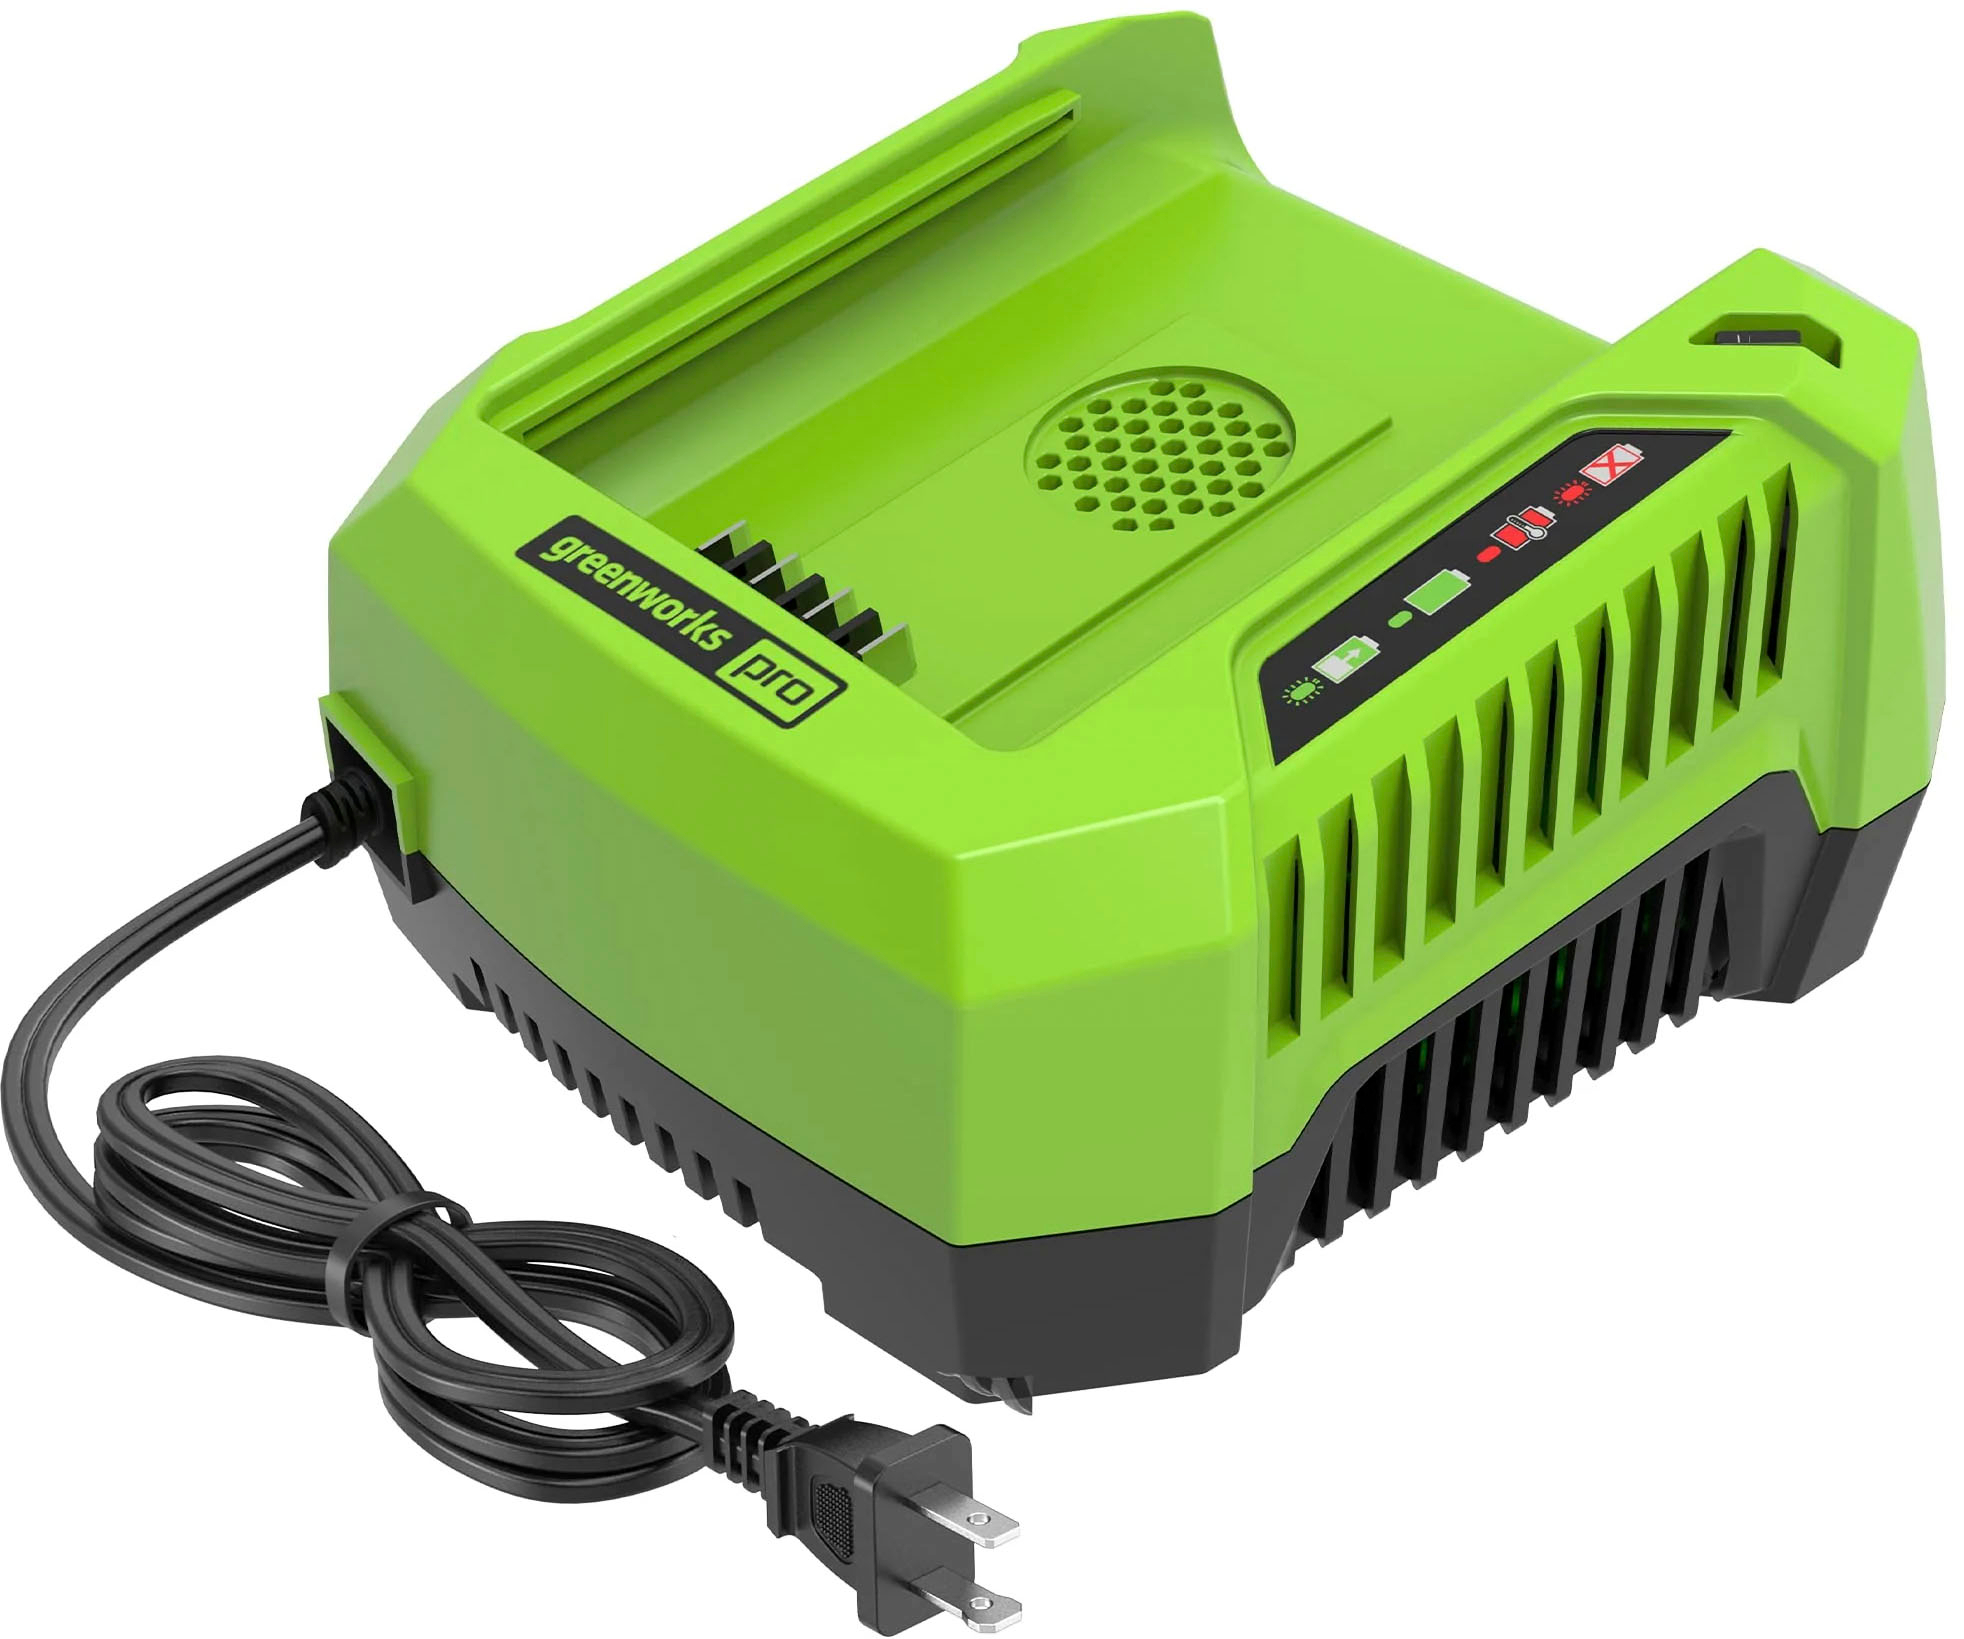 Greenworks - 80-Volt Pro Rapid Battery Charger - Black/Green